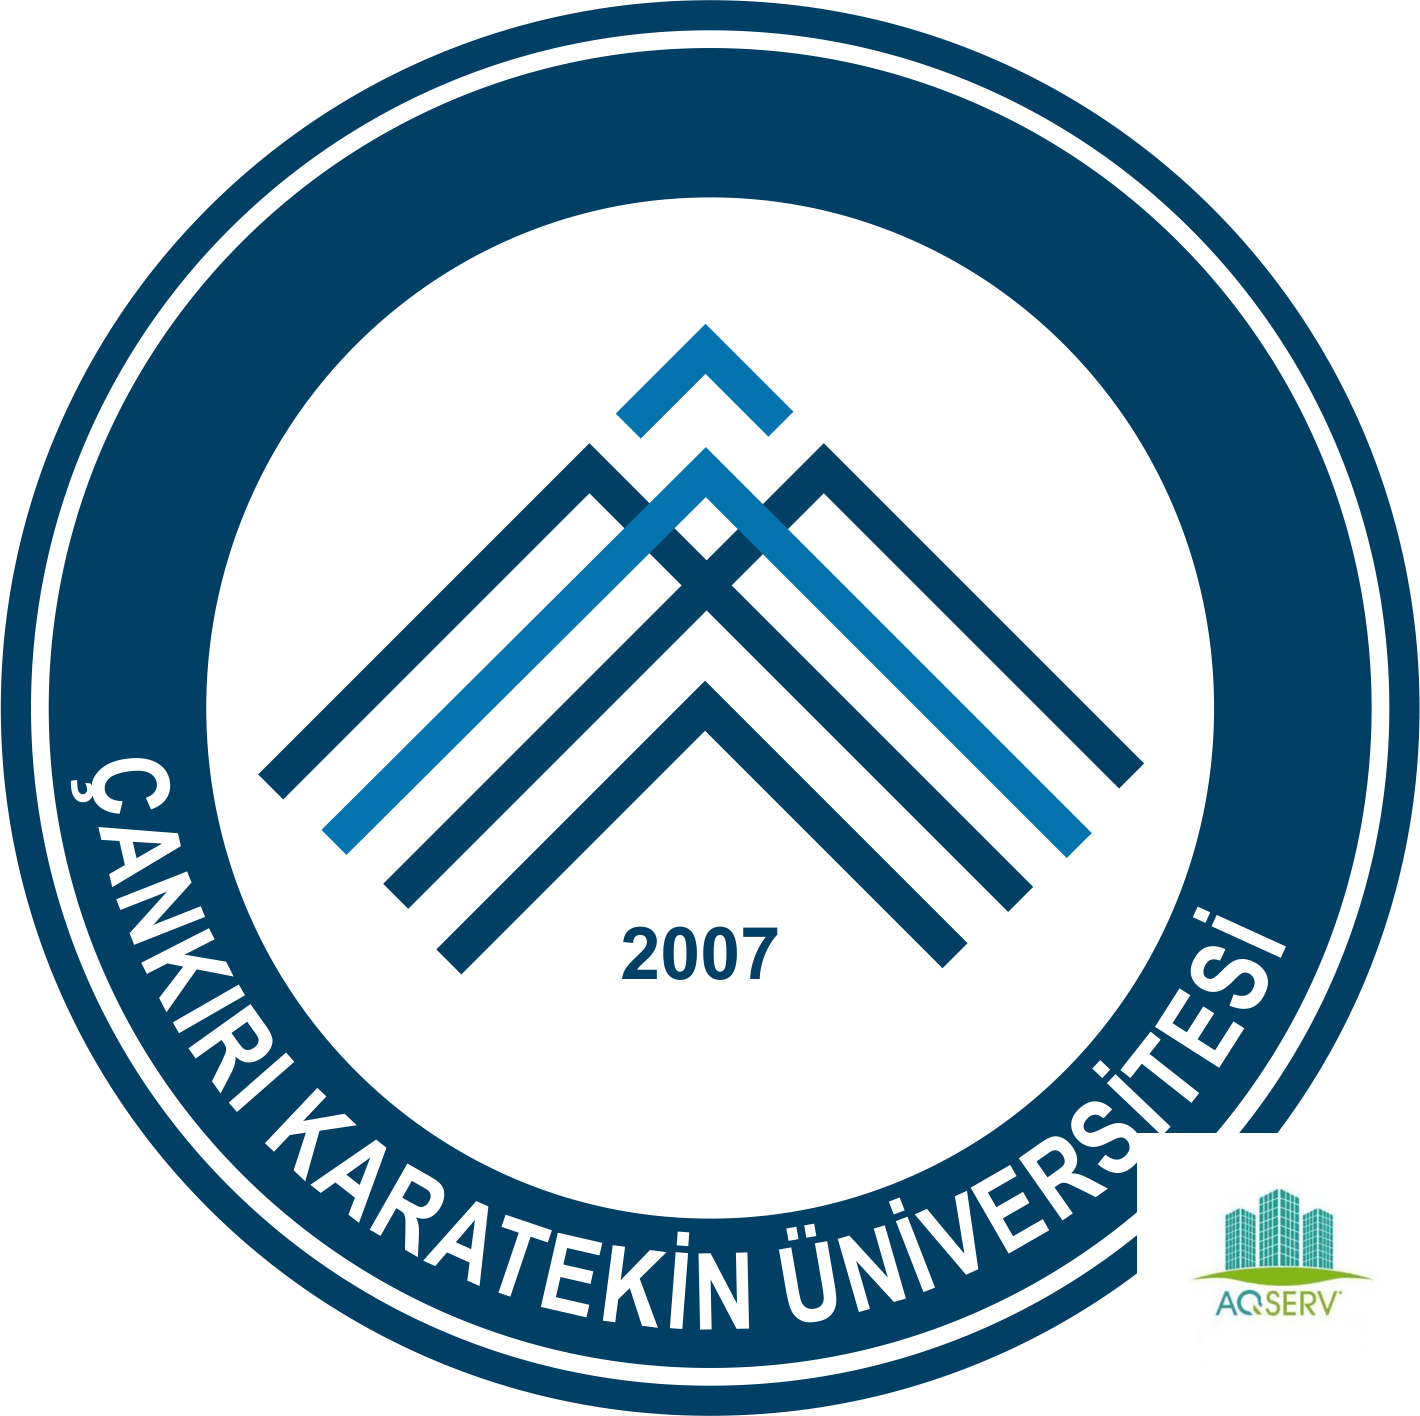 جامعة جانكري كاراتكين التركية – Çankırı Karatekin University